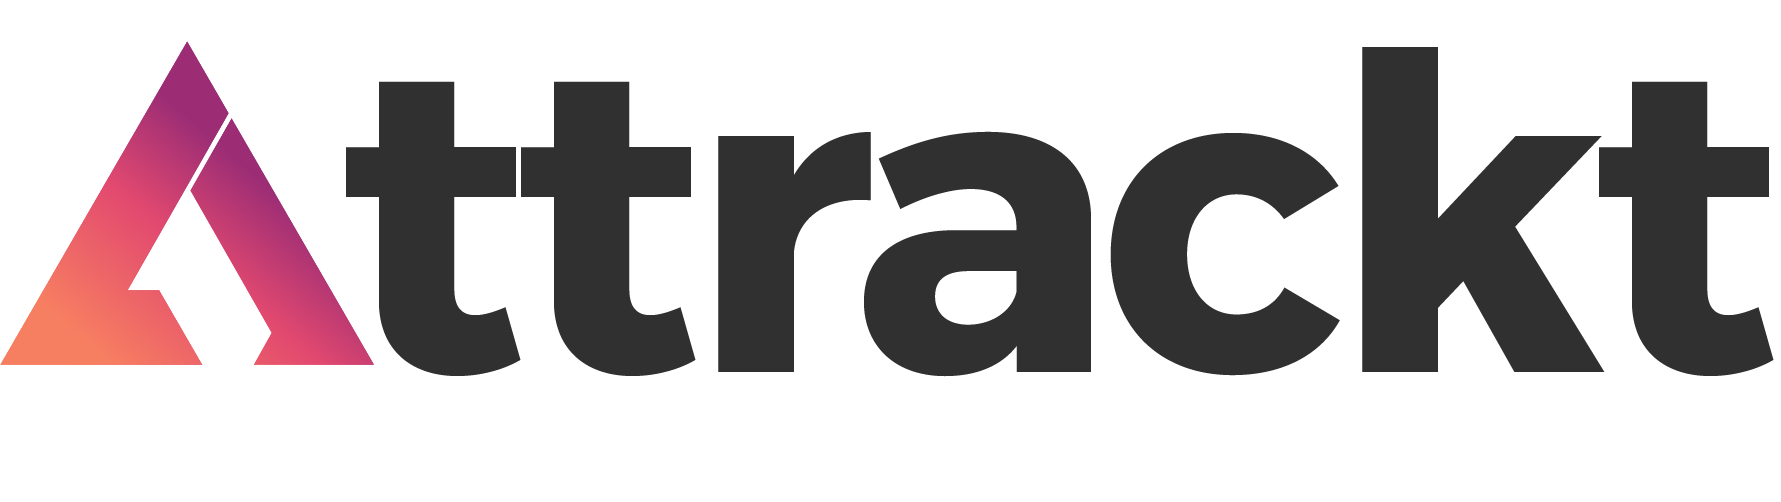 Attrackt logo